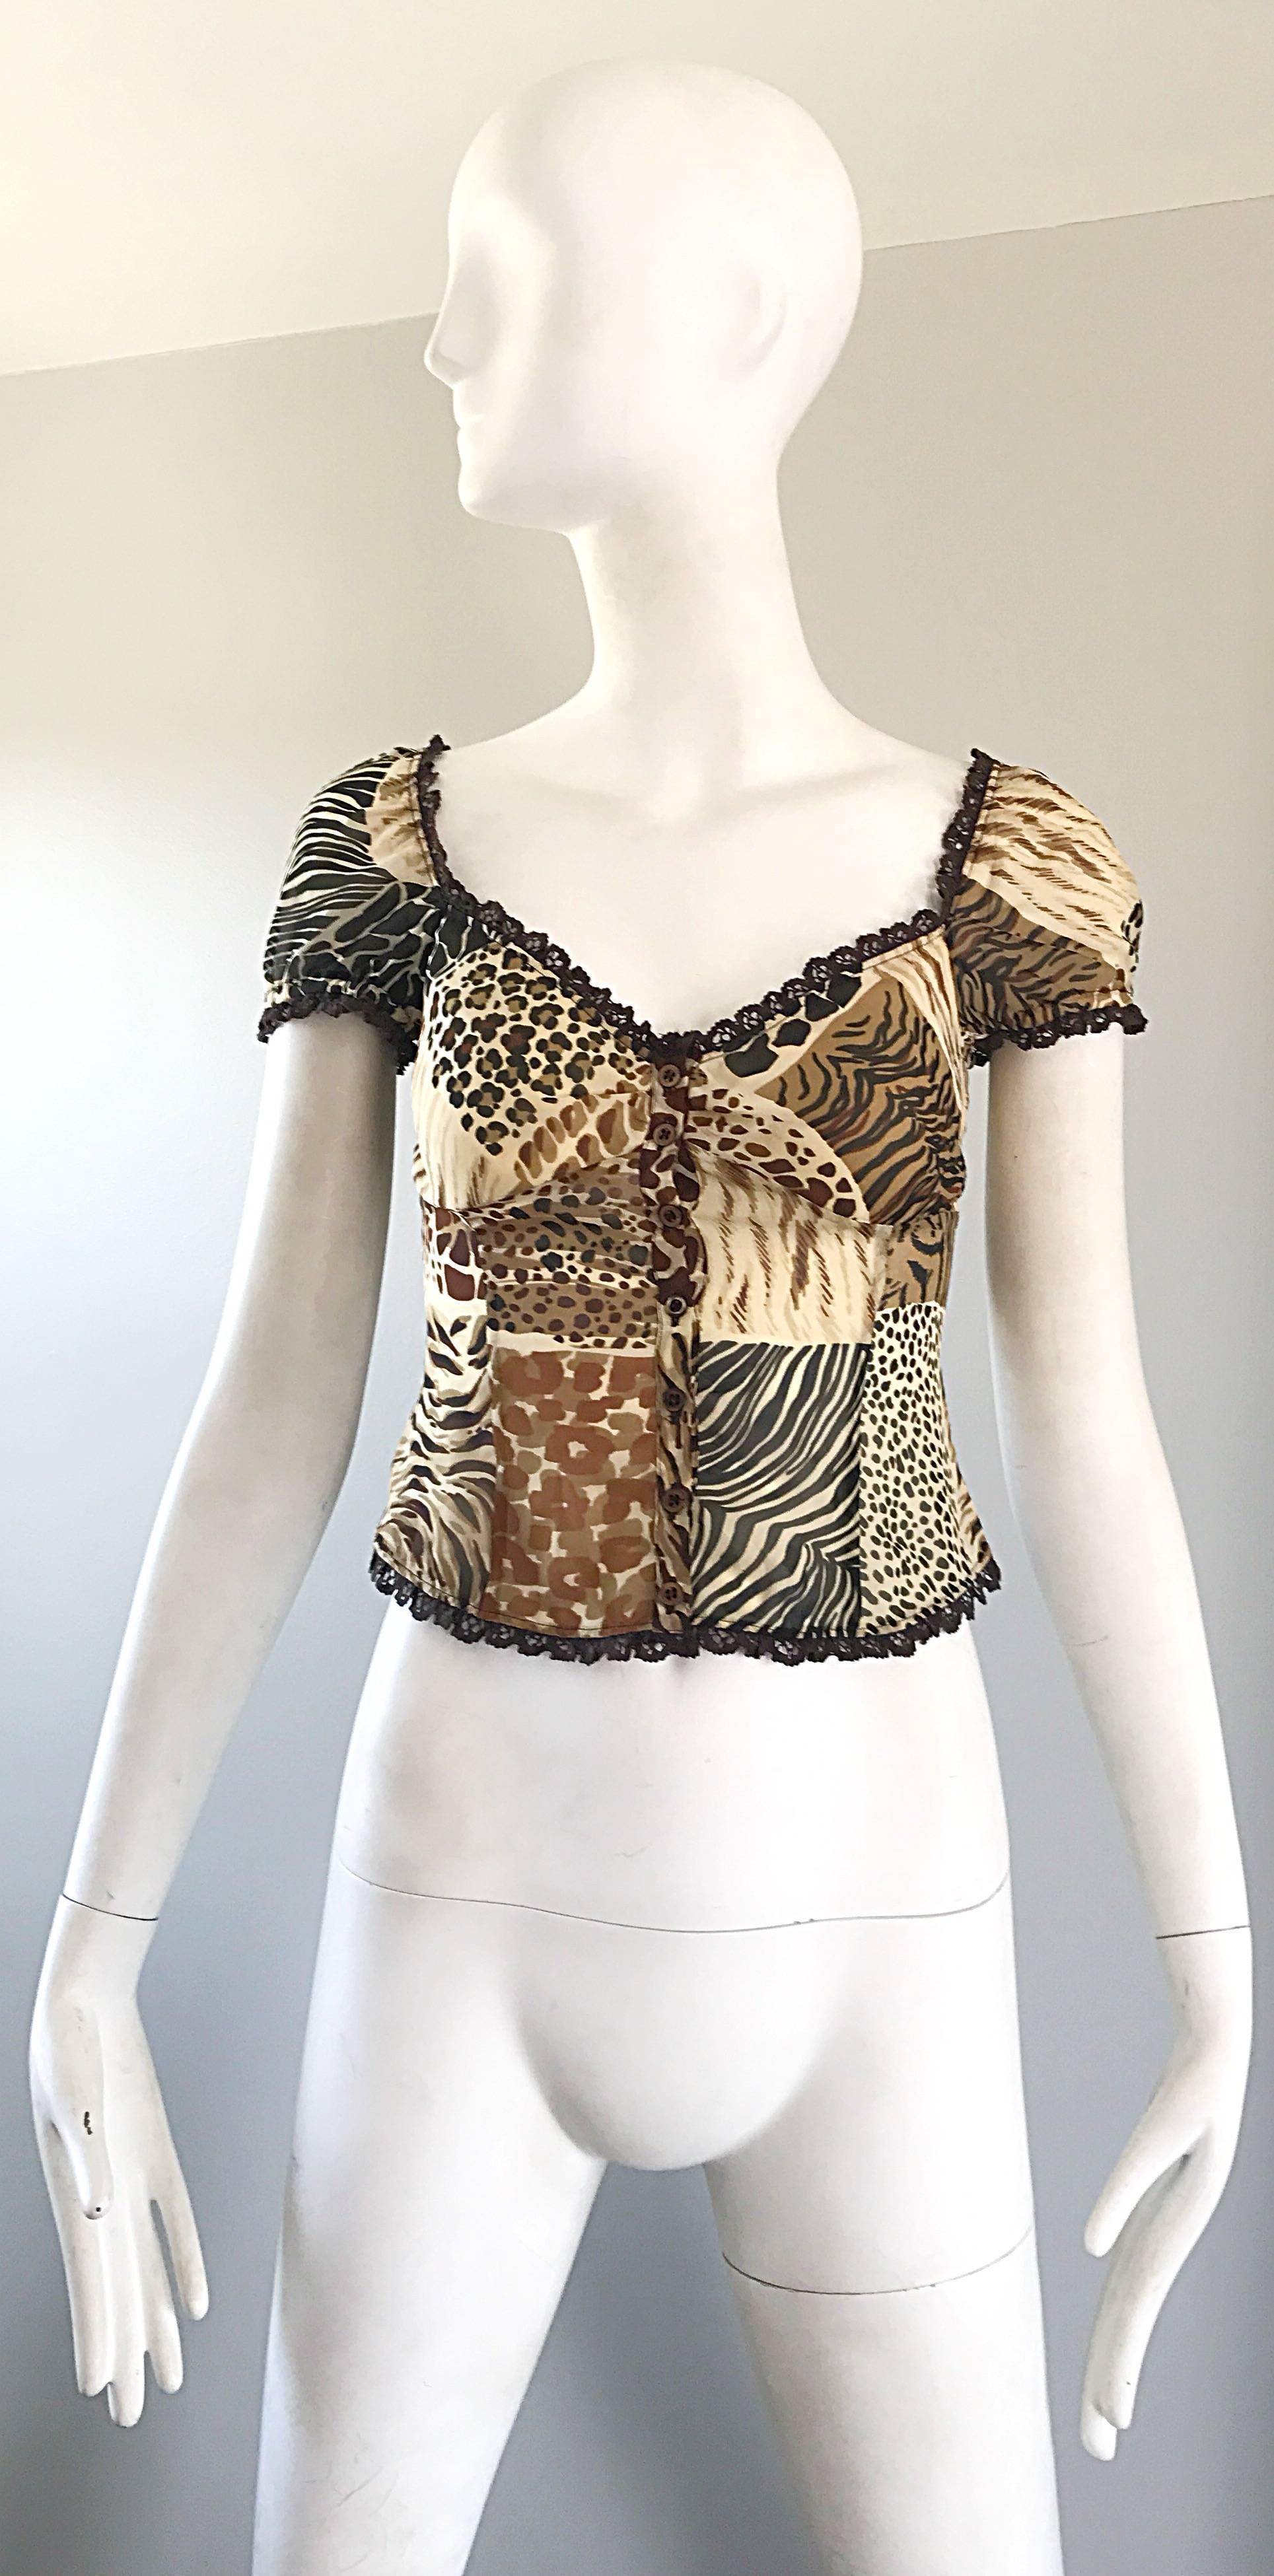 Magnifique blouse vintage MOSCHINO Cheap & Chic en soie imprimé animal ! Il est orné d'imprimés léopard, zèbre, guépard et tigre. Des couleurs chaudes de brun, d'ivoire, garnies de dentelle noire. Le buste est doublé de mousseline de soie. Boutons